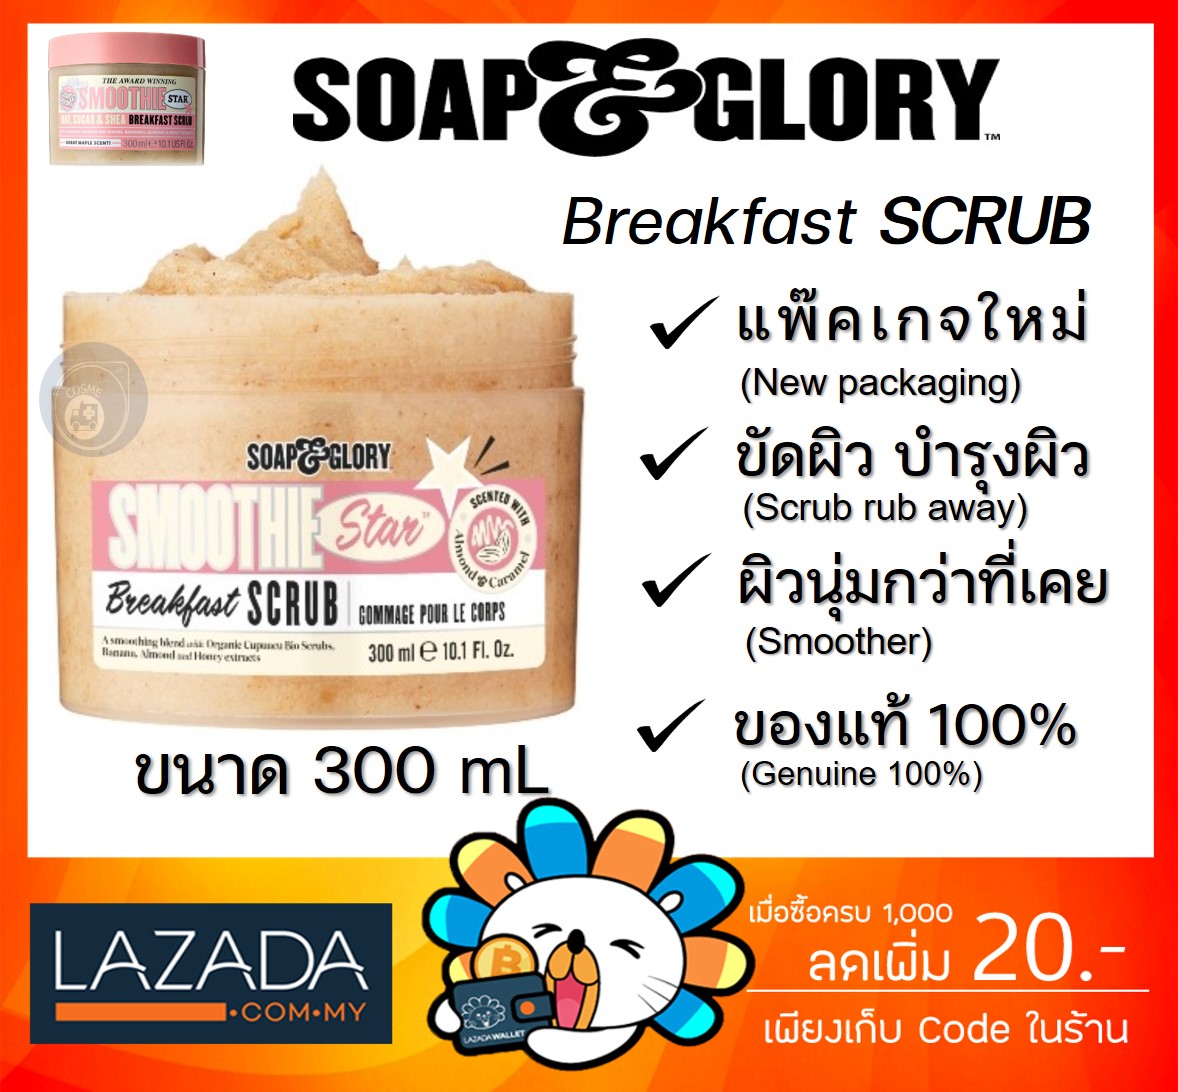 ราคา Soap & Glory The Breakfast Scrub Soap and glory โซพแอนด์กลอรี่ เดอะเบรคฟาสต์สครับ ขนาด 300ml